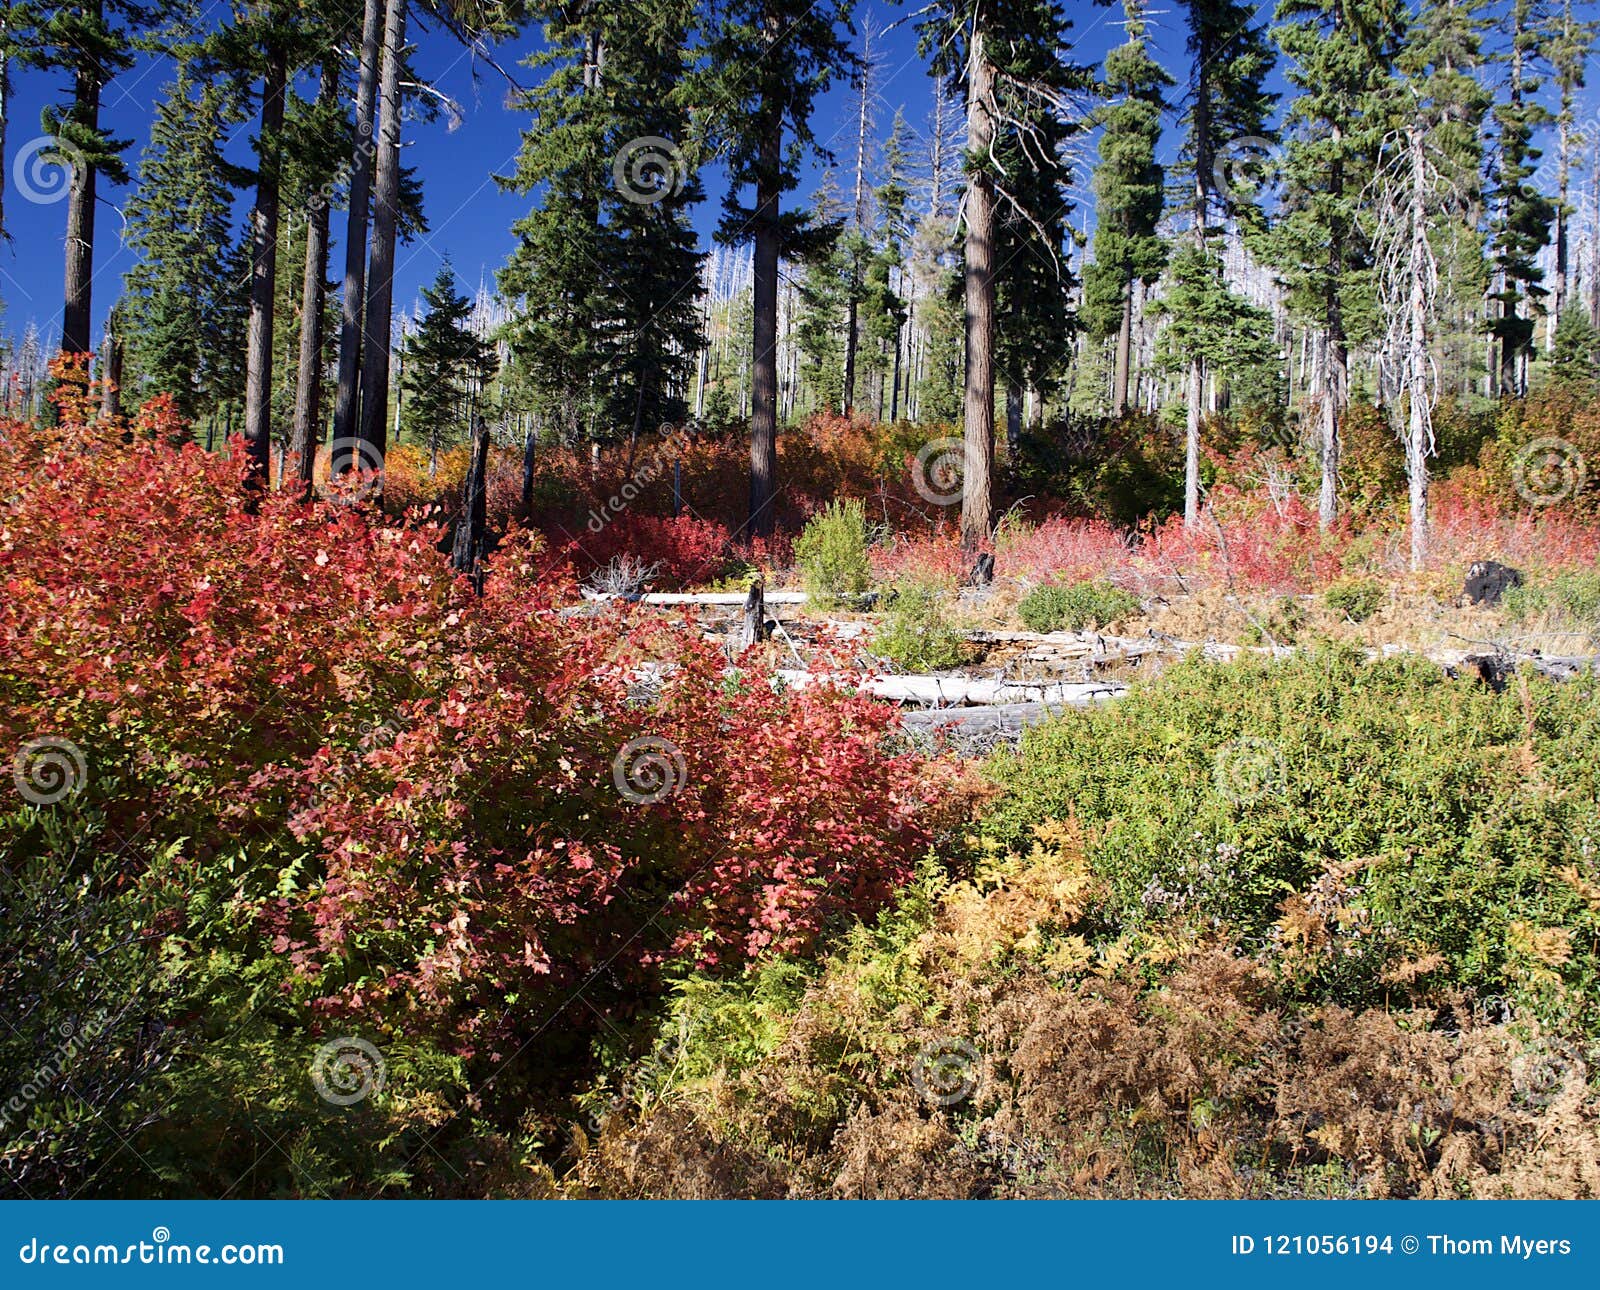 Λαμπρά χρώματα πτώσης στα δάση. Φύλλα στα χρώματα πτώσης κόκκινος τους, πορτοκαλής και κίτρινος στους θάμνους που καλύπτουν το δασικό πάτωμα του δυτικού Όρεγκον μια ηλιόλουστη ημέρα